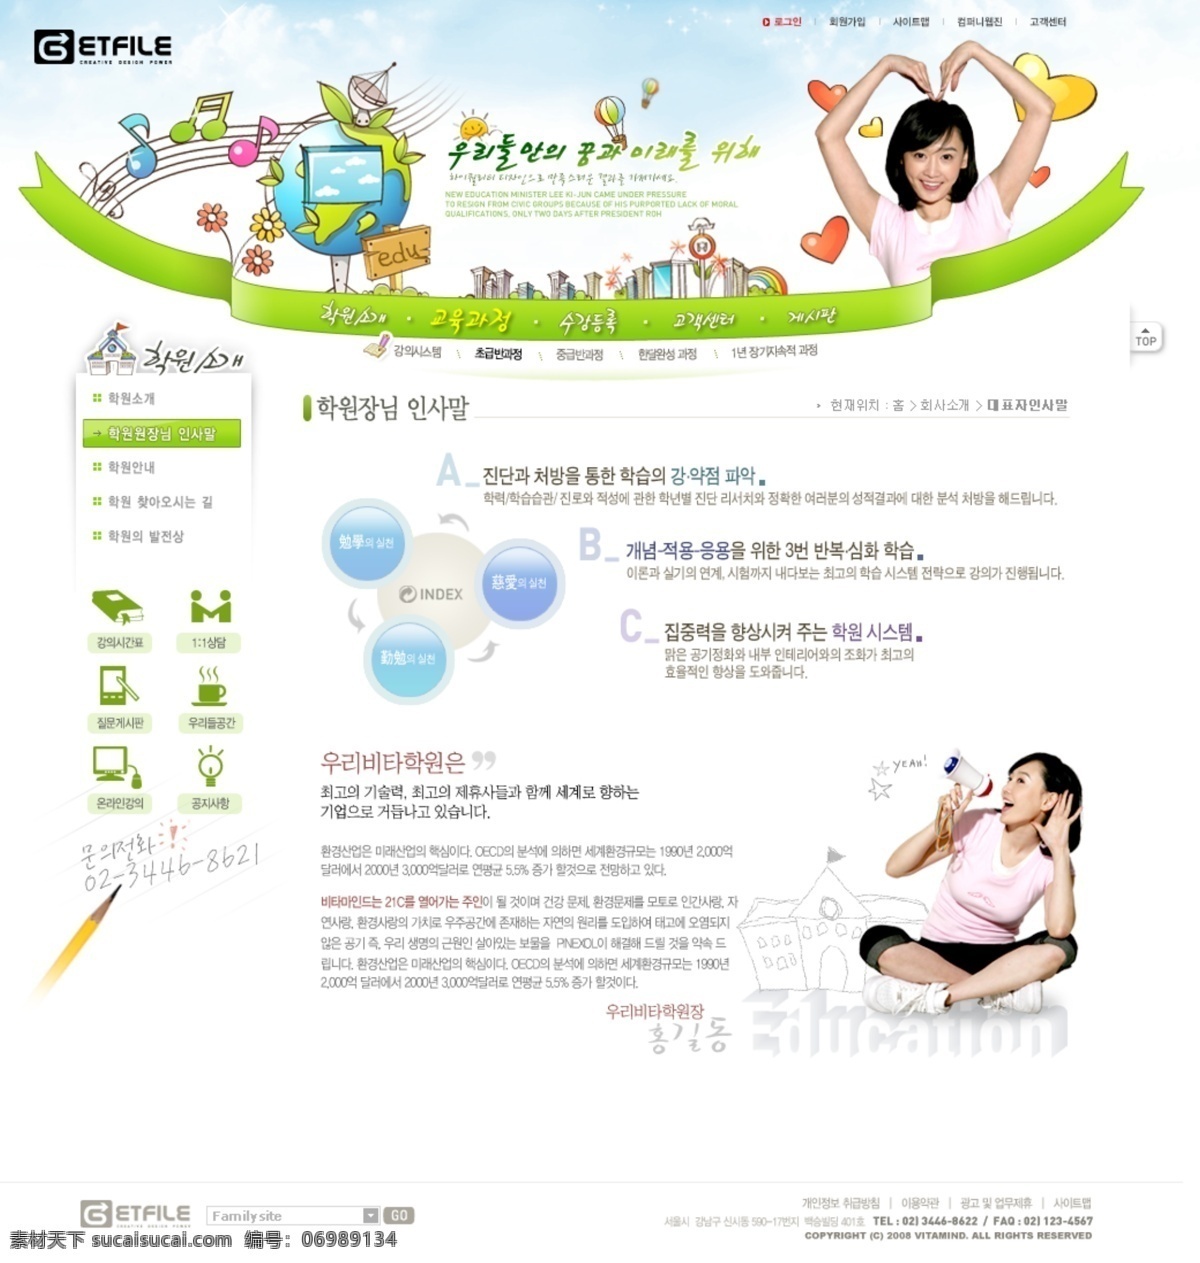 儿童 儿童网页模板 儿童网站 韩国模板 卡通字母 网页菜单 网页模板 幼儿园 幼儿园网站 源文件 网页素材